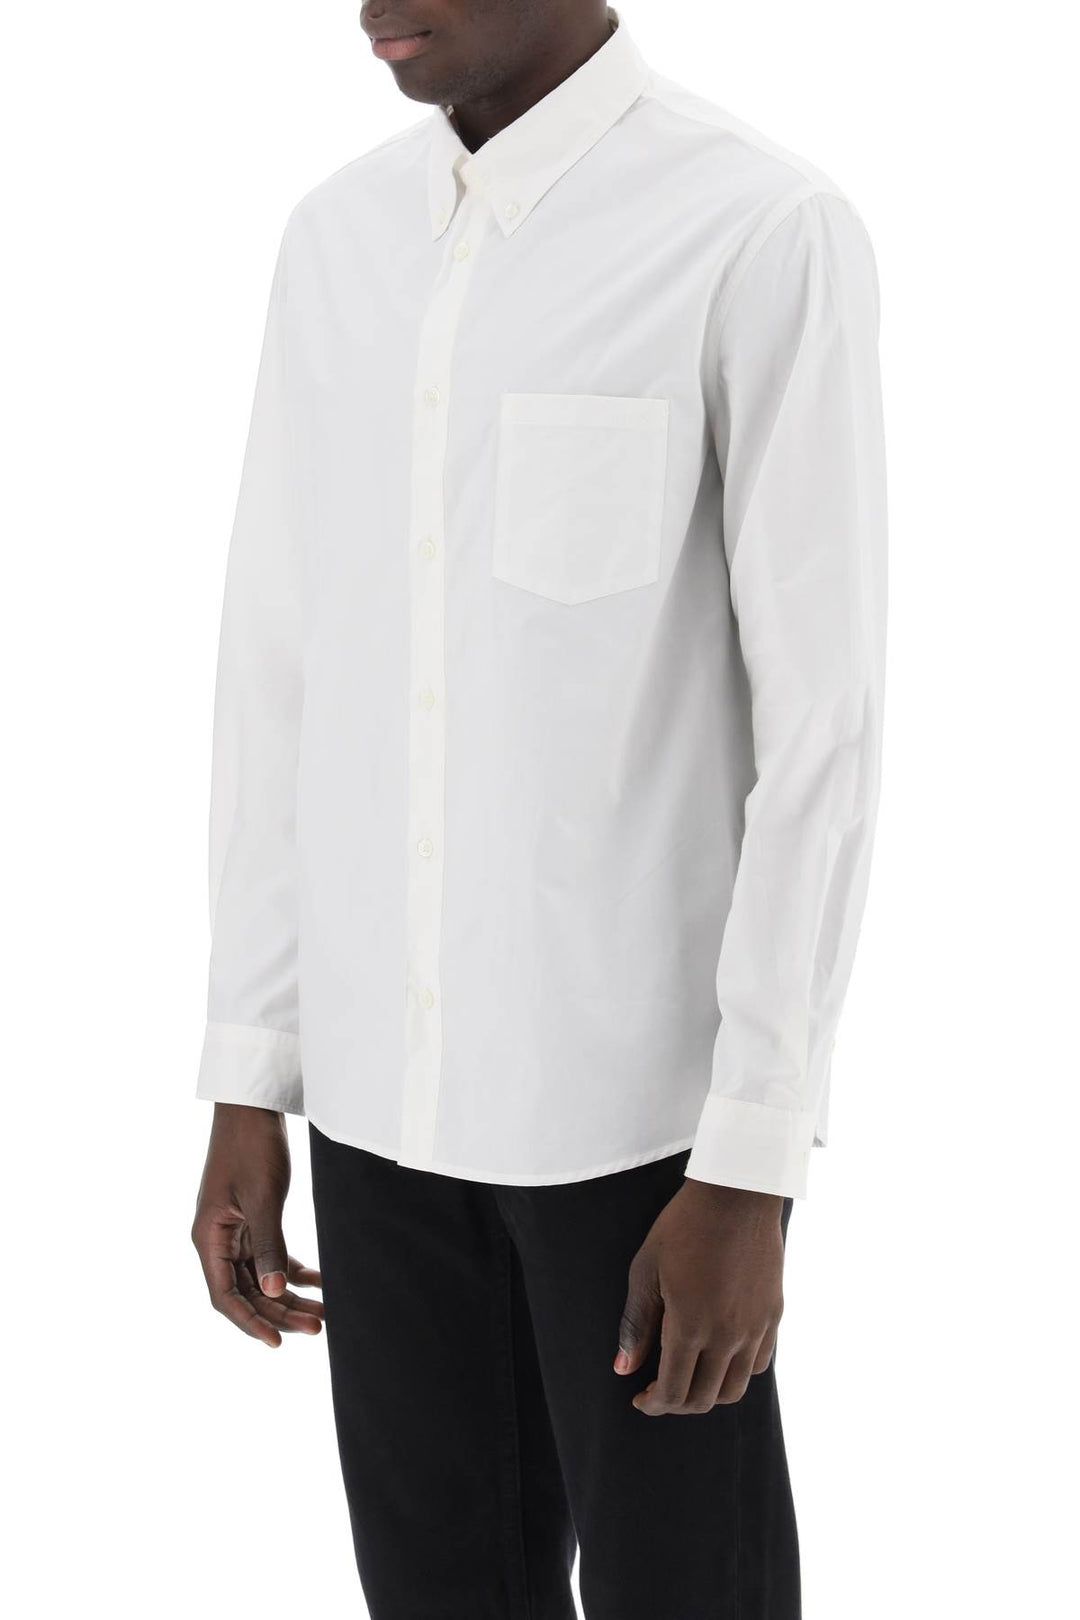 A.P.C. Edouard Button Down Shirt   Bianco